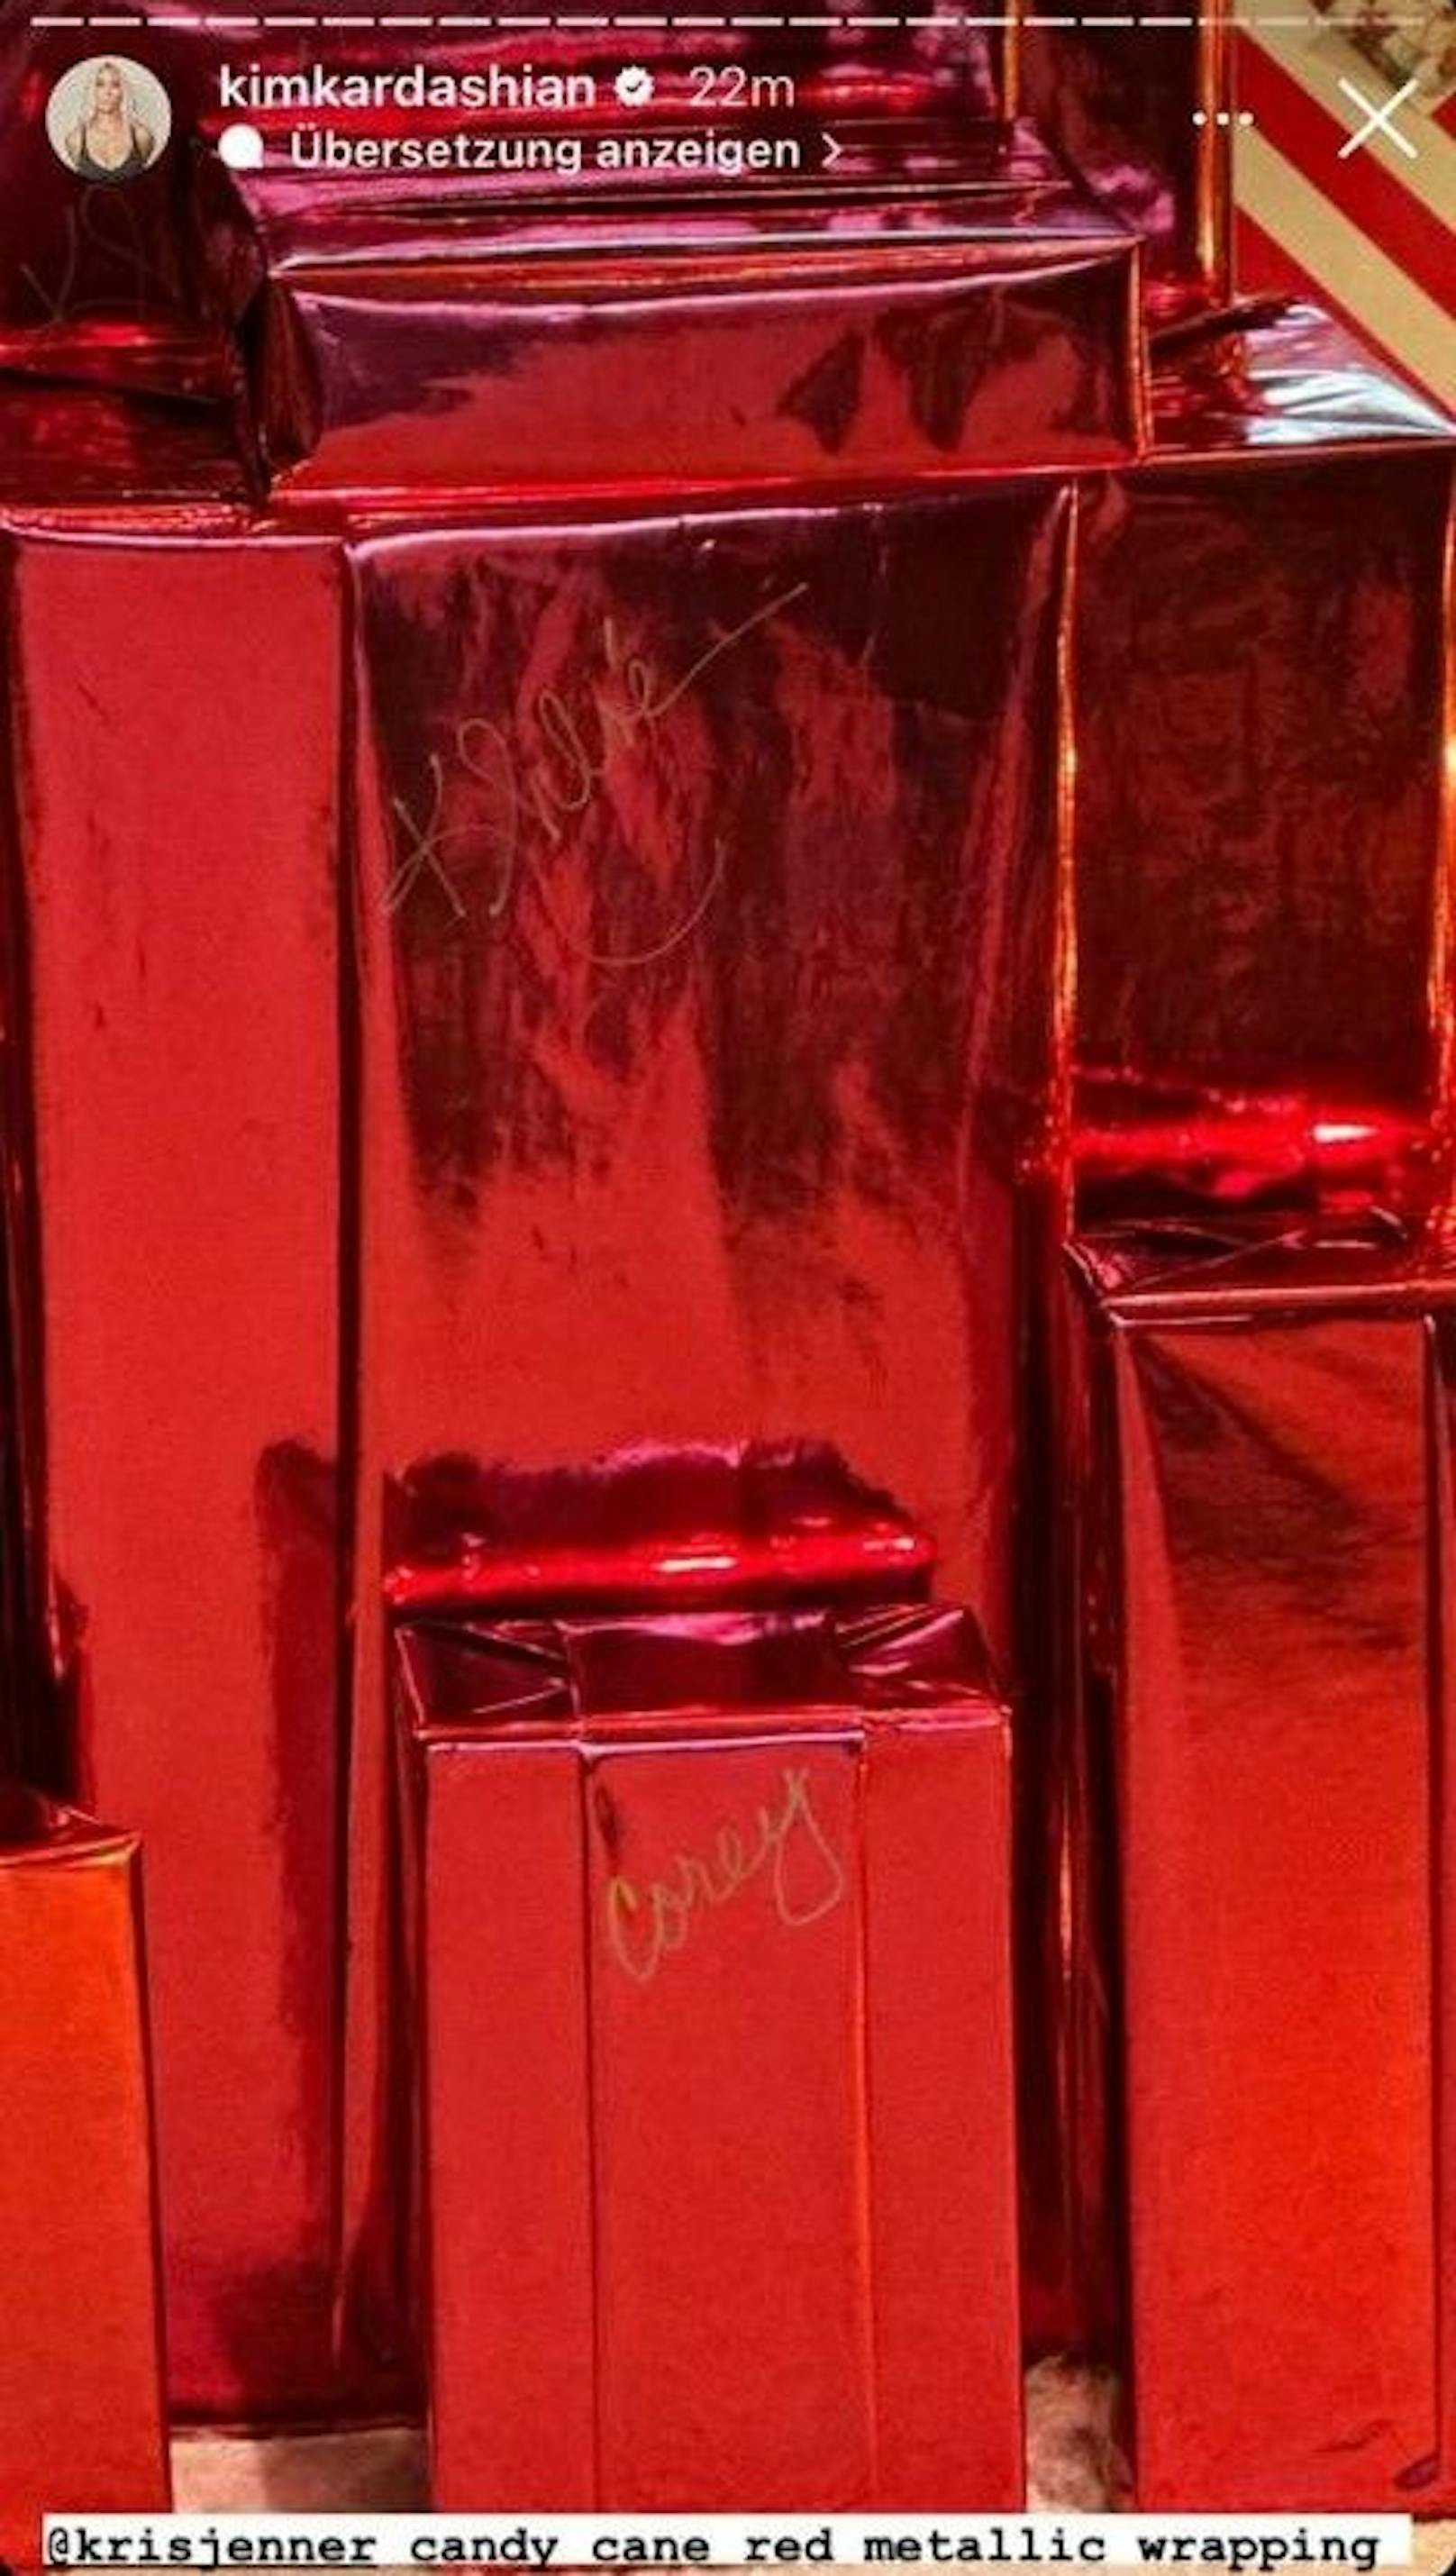 Mama Kris Jenner verpackte ihre Geschenke in einem klassischen, metallisch glänzenden roten Papier.